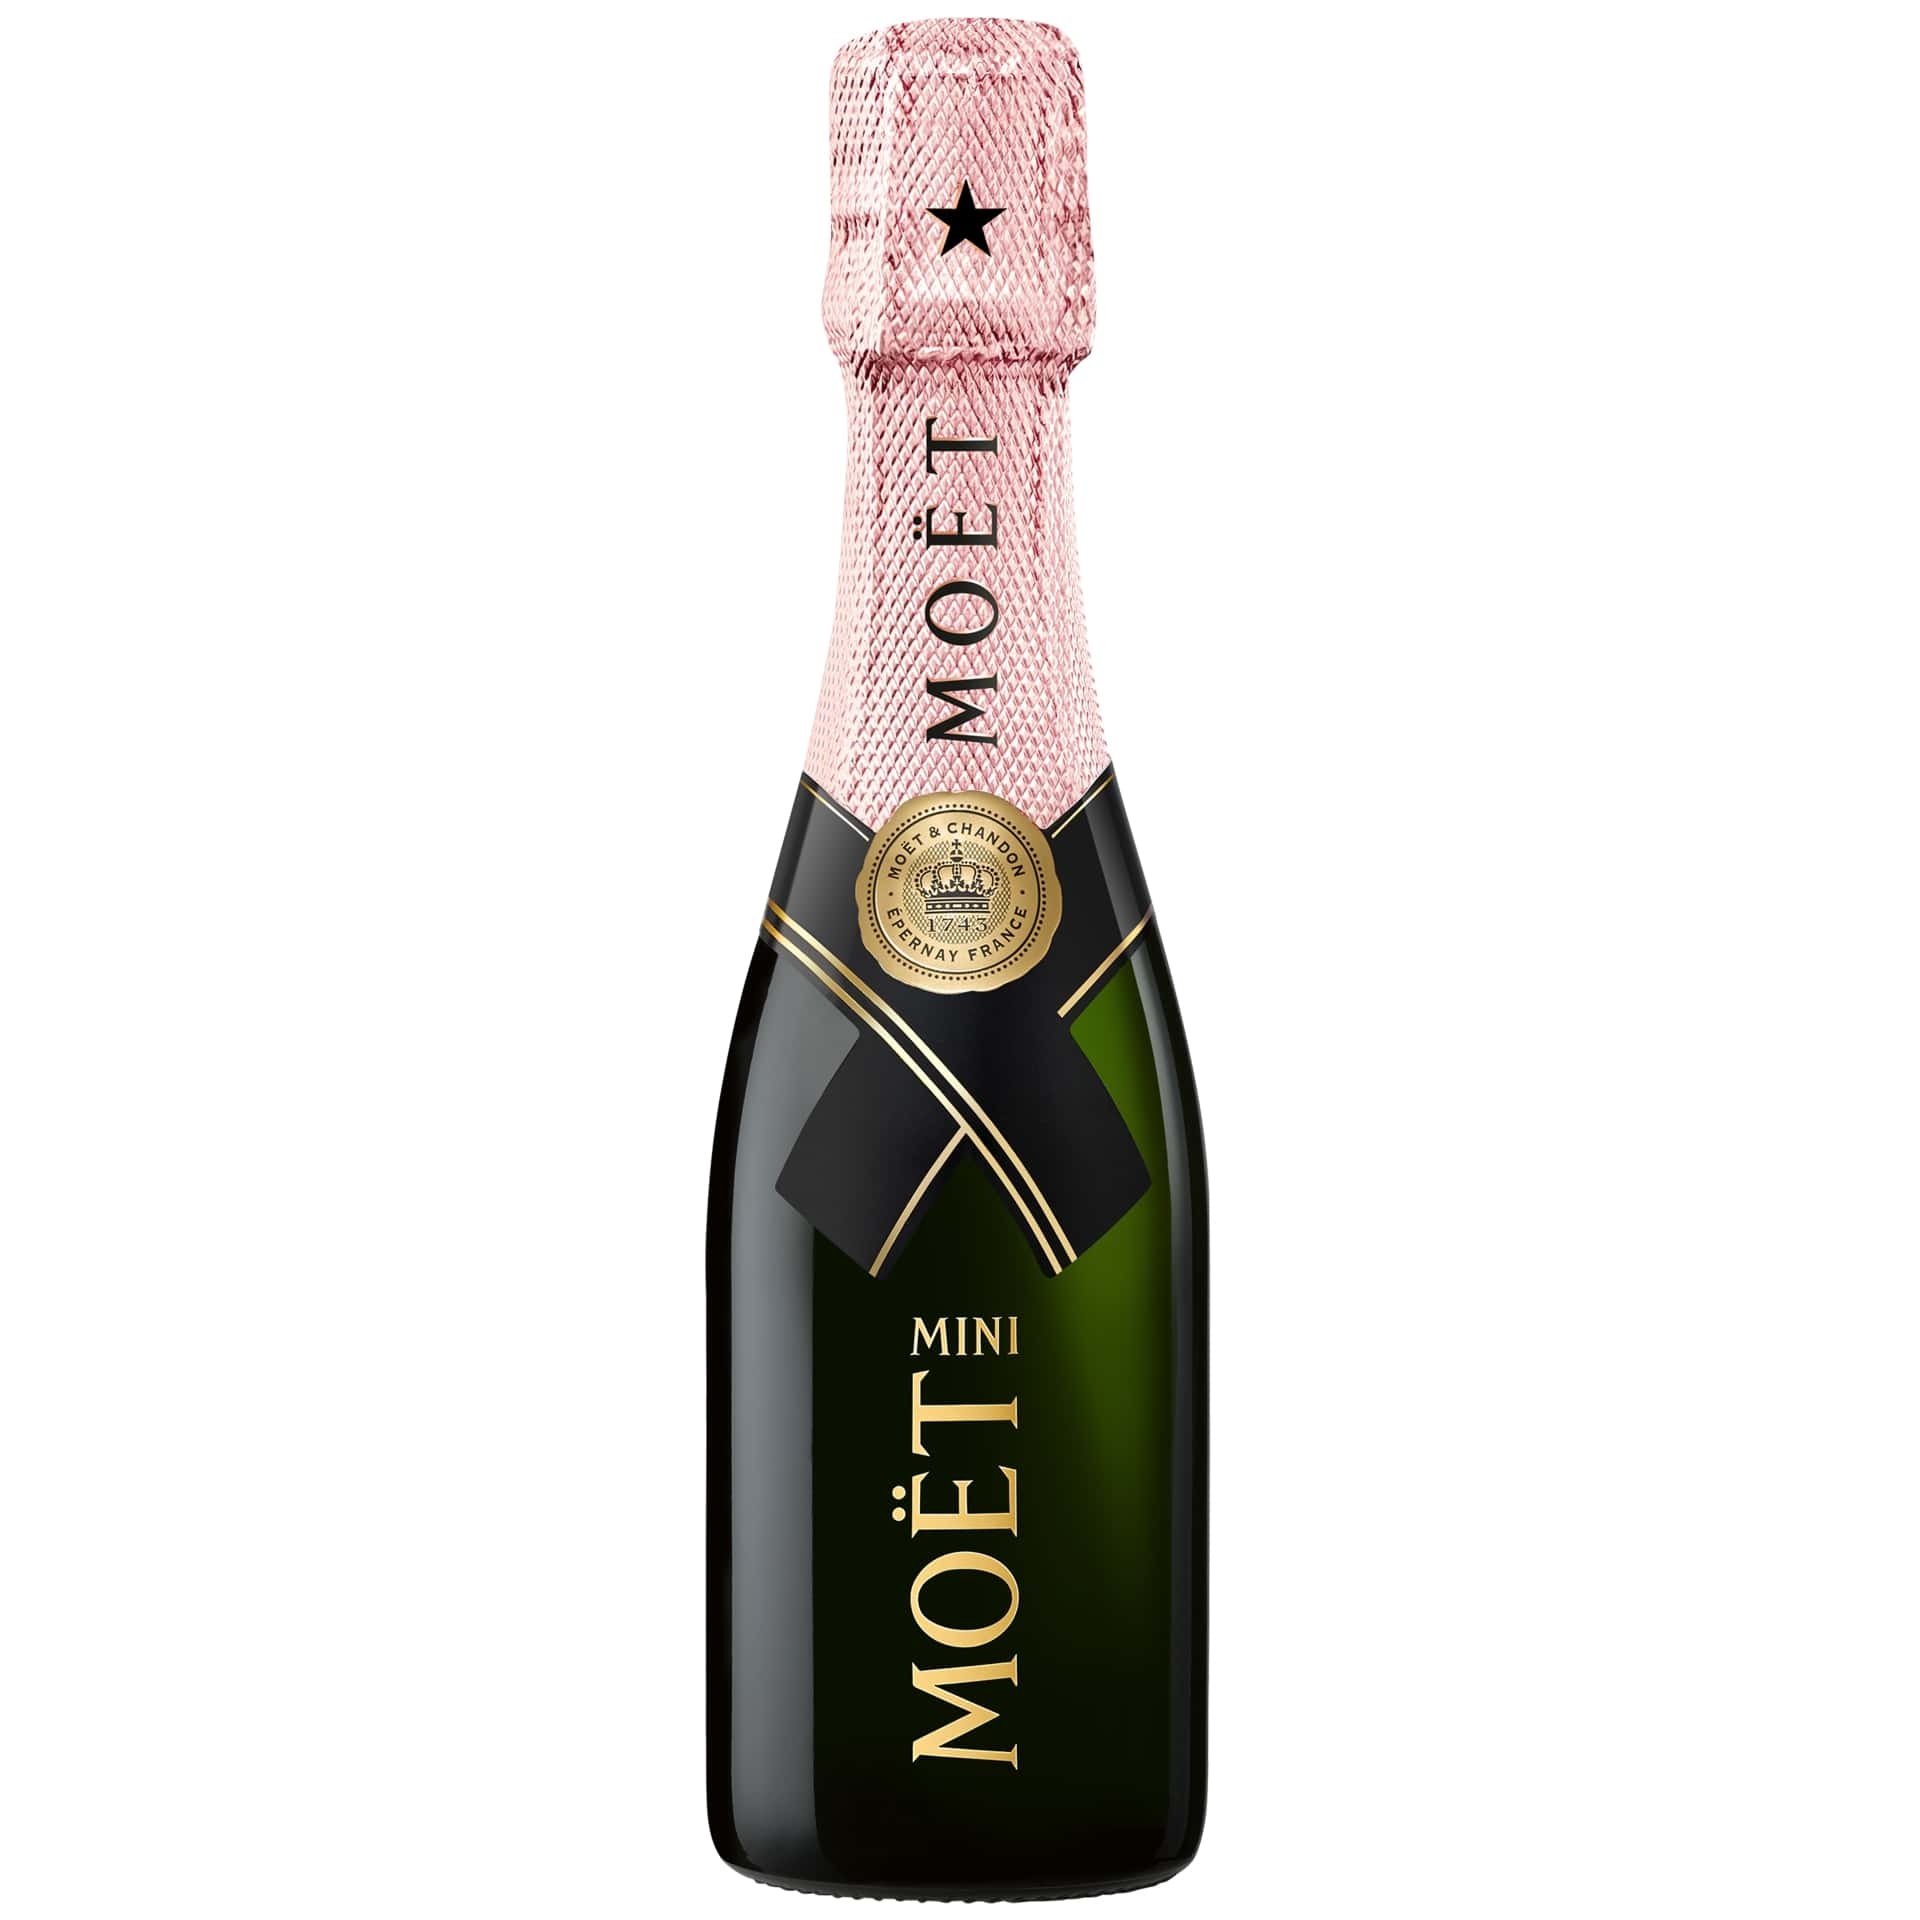 Moet & Brut Rose 20CL - Club Champagne